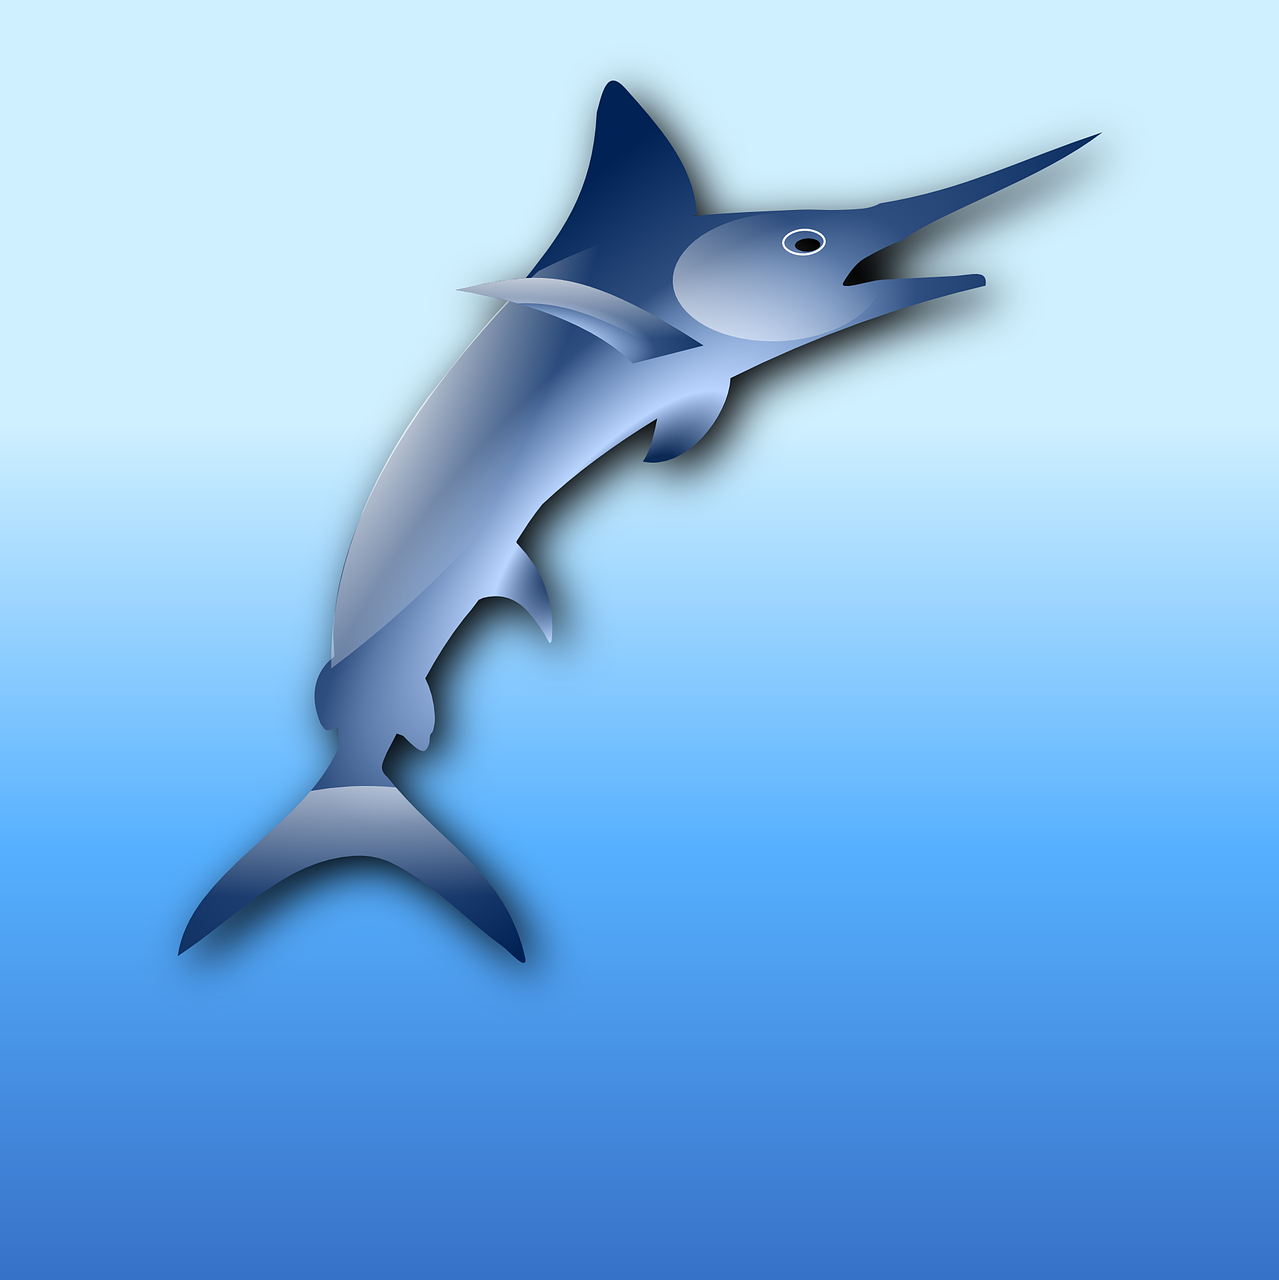 Pacific Blue Marlin (Kajiki)